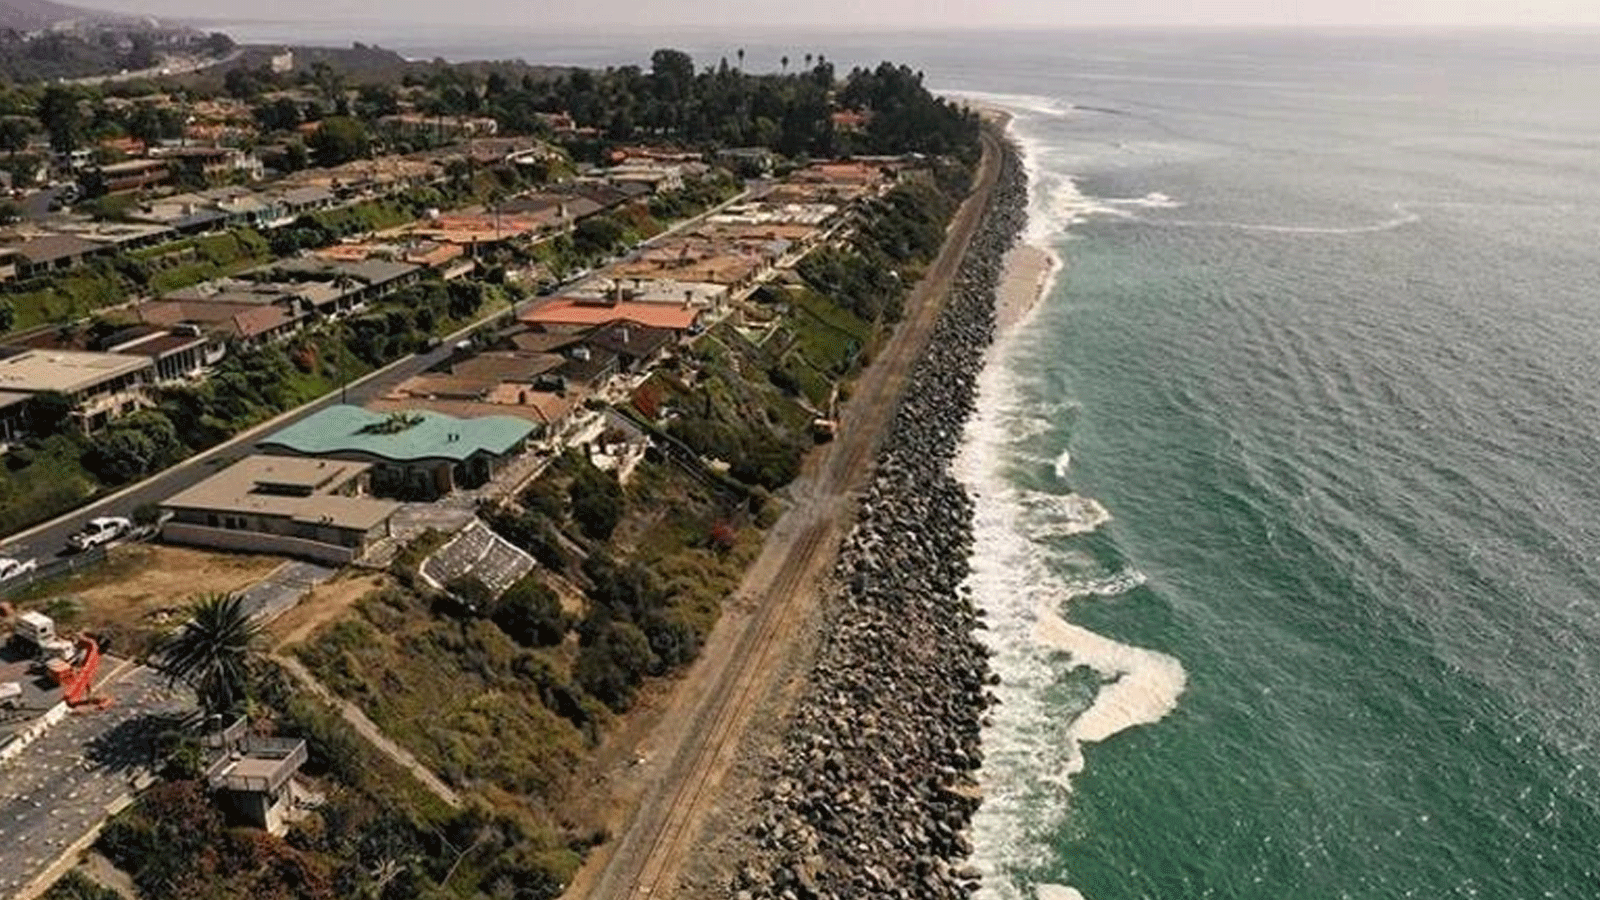 البحر يبتلع المنازل والمسارات وشواطئ كاليفورنيا الجميلة.